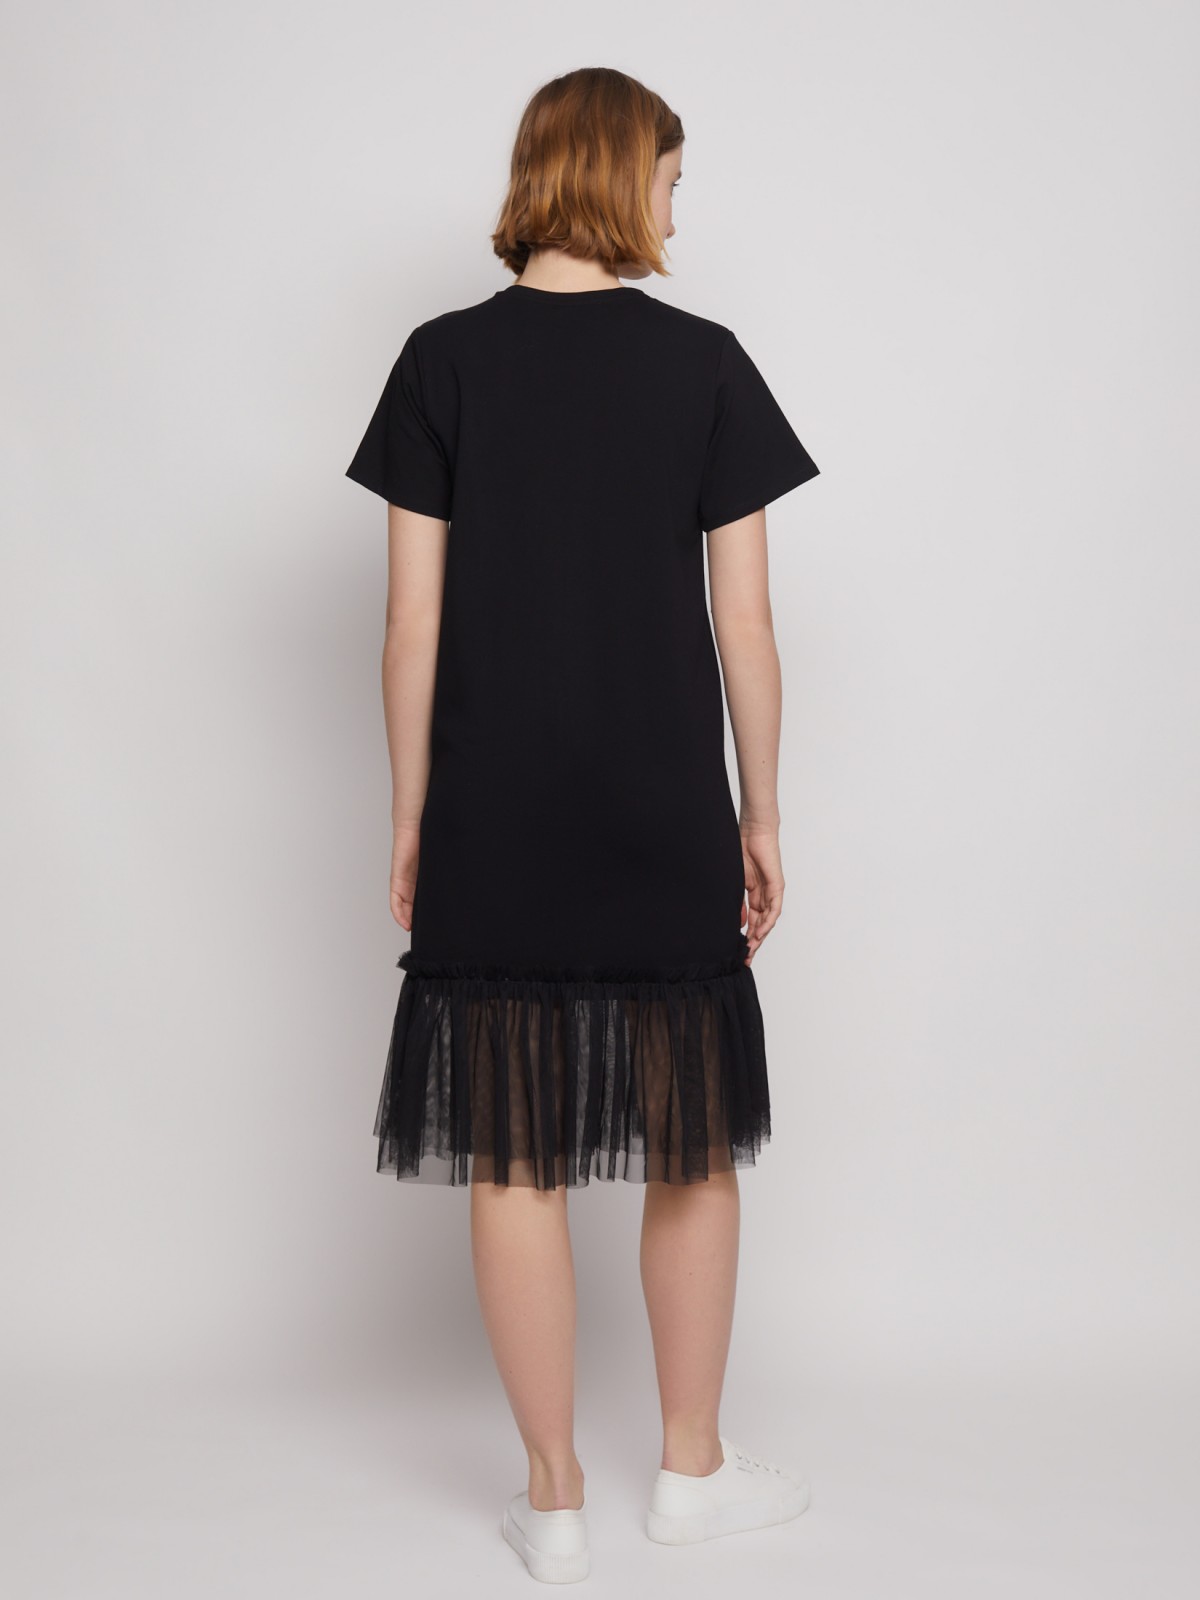 Женские платья-футболки — купить в интернет-магазине Ламода